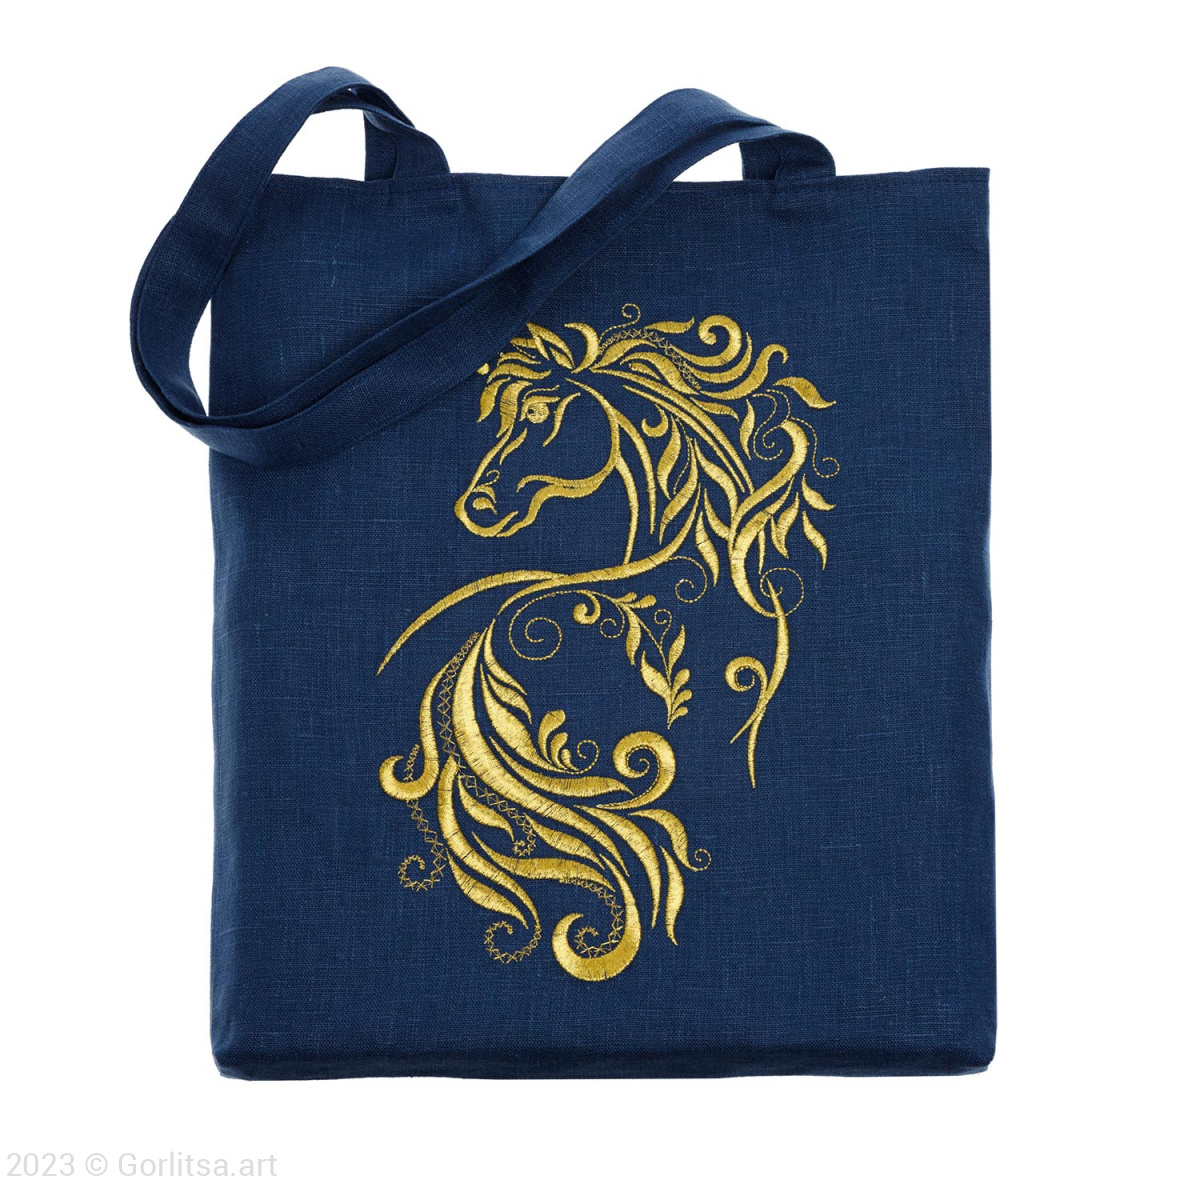 Льняная сумка-шоппер «Золотая лошадь» 62011-4, синий / золото лён Никифоровская мануфактура